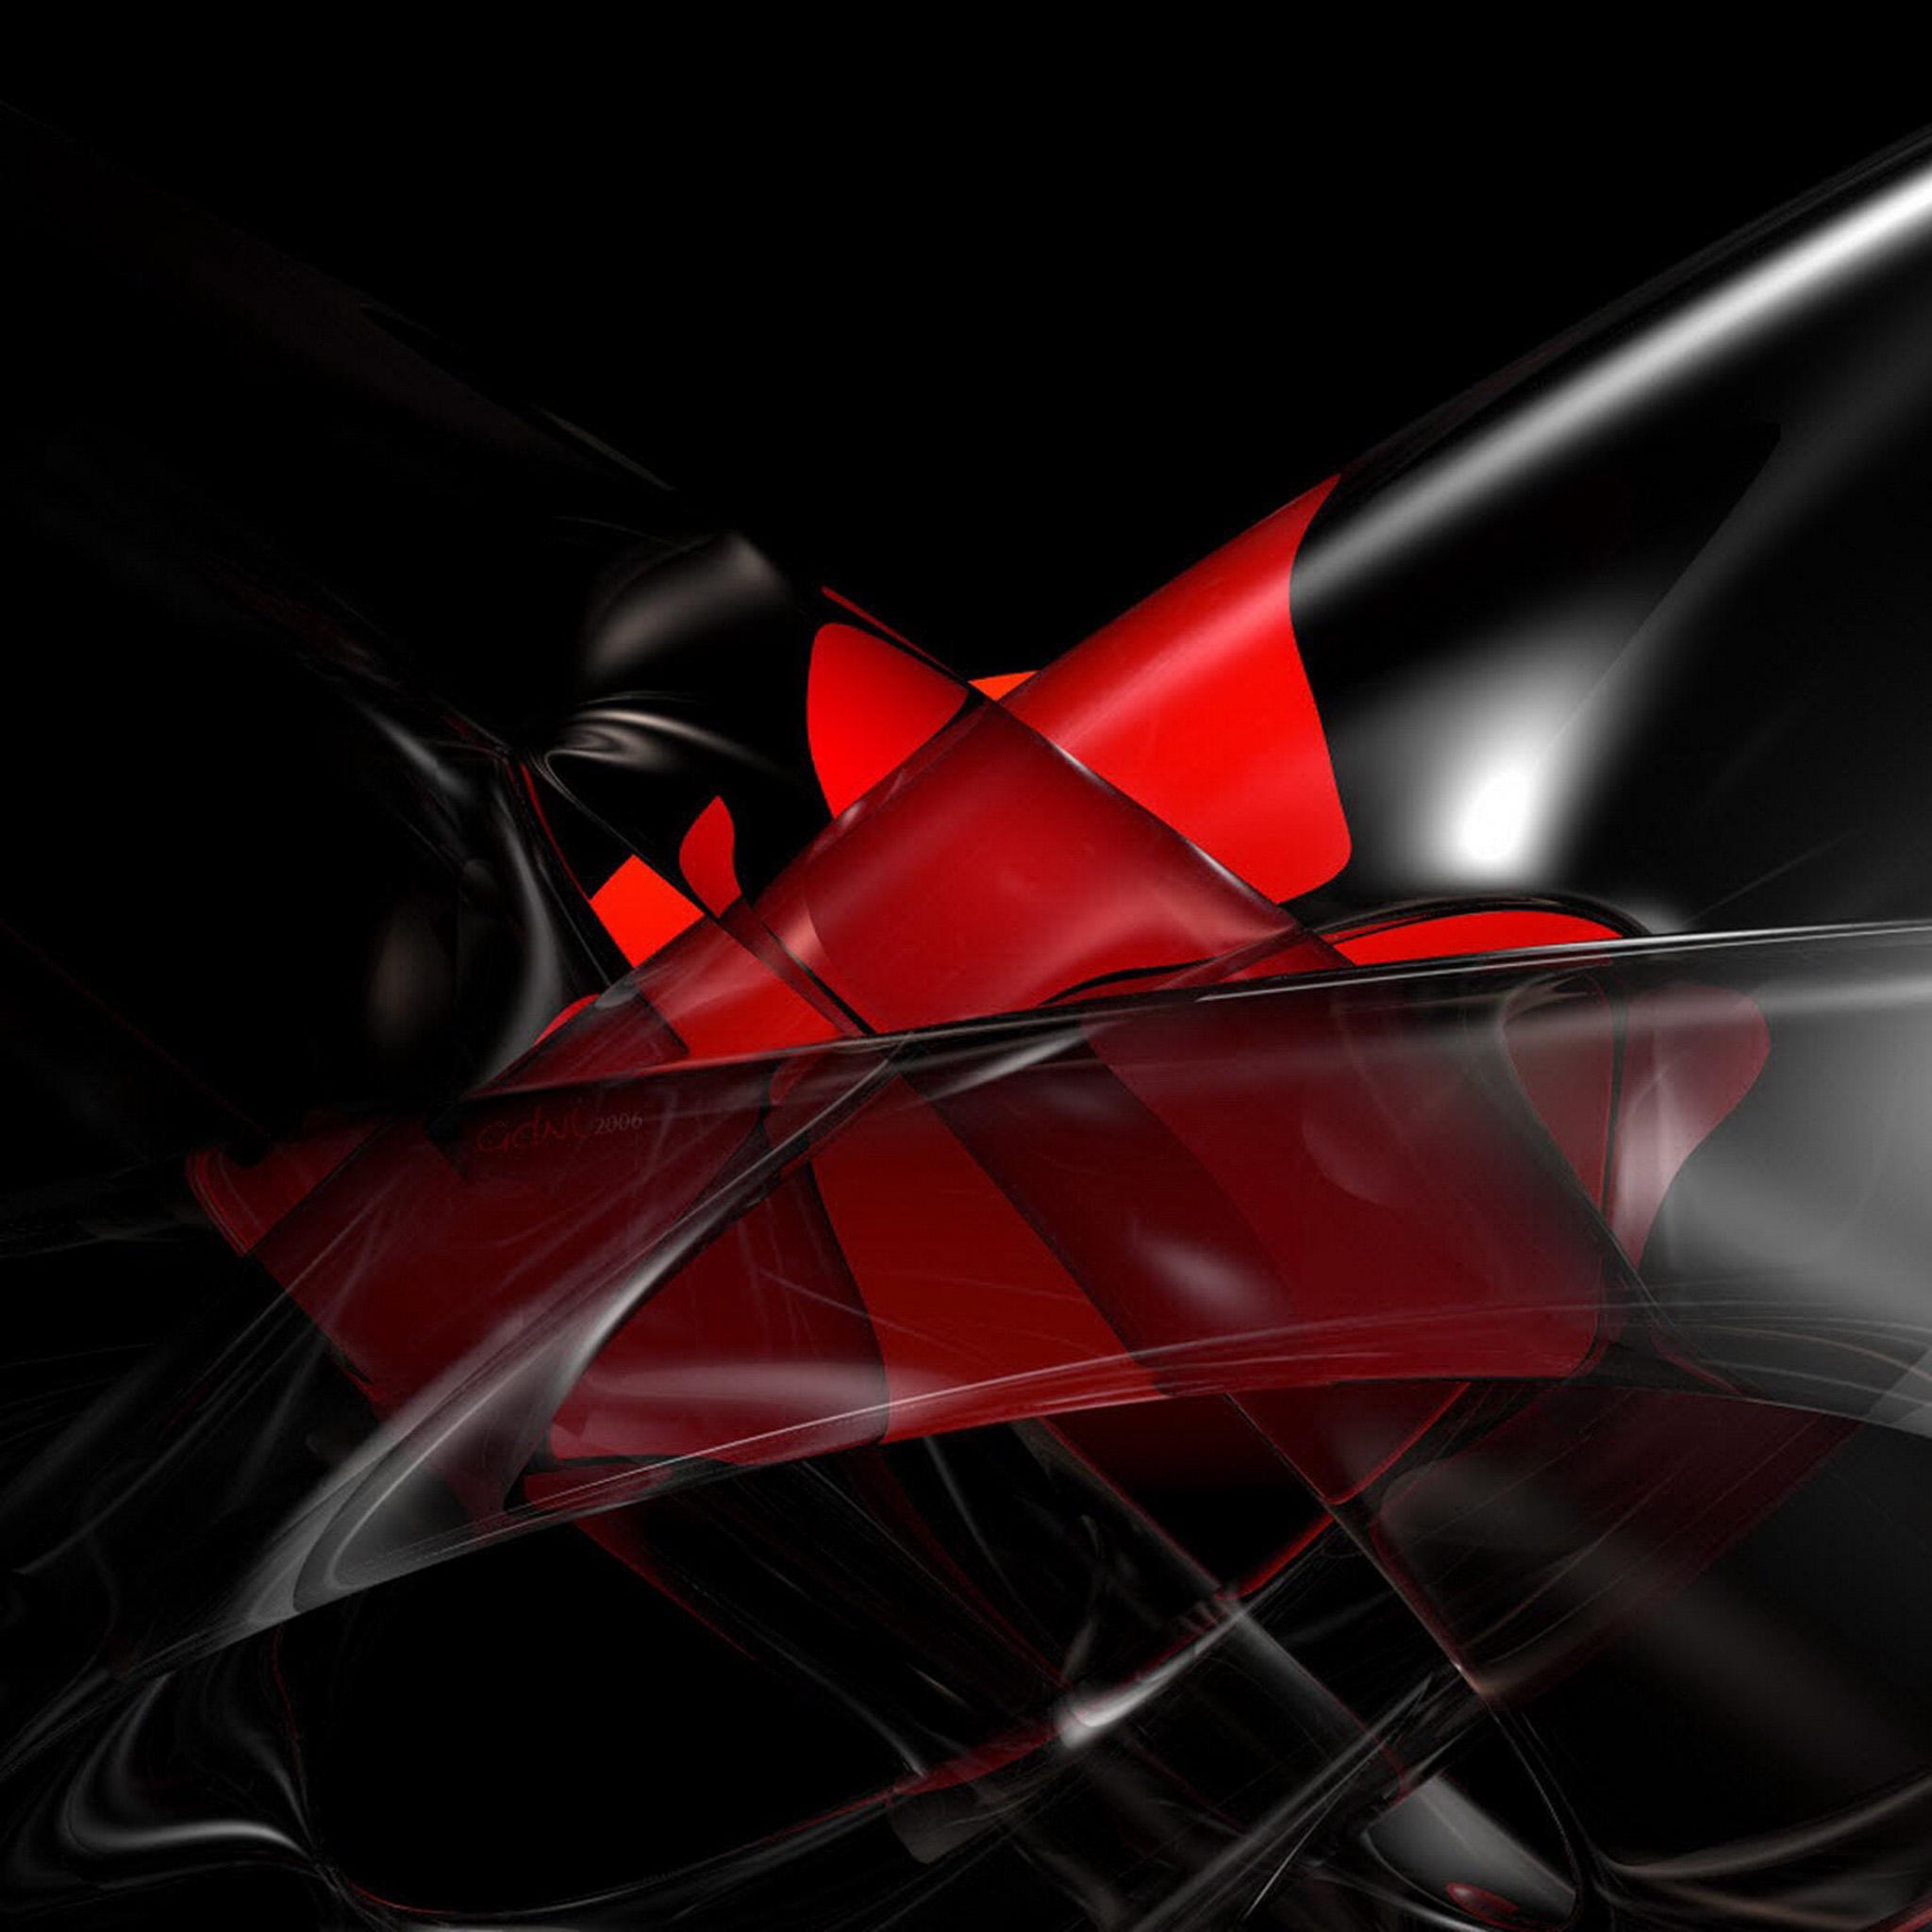 ipad fondos de pantalla retina,rojo,negro,carmín,iluminación automotriz,gráficos